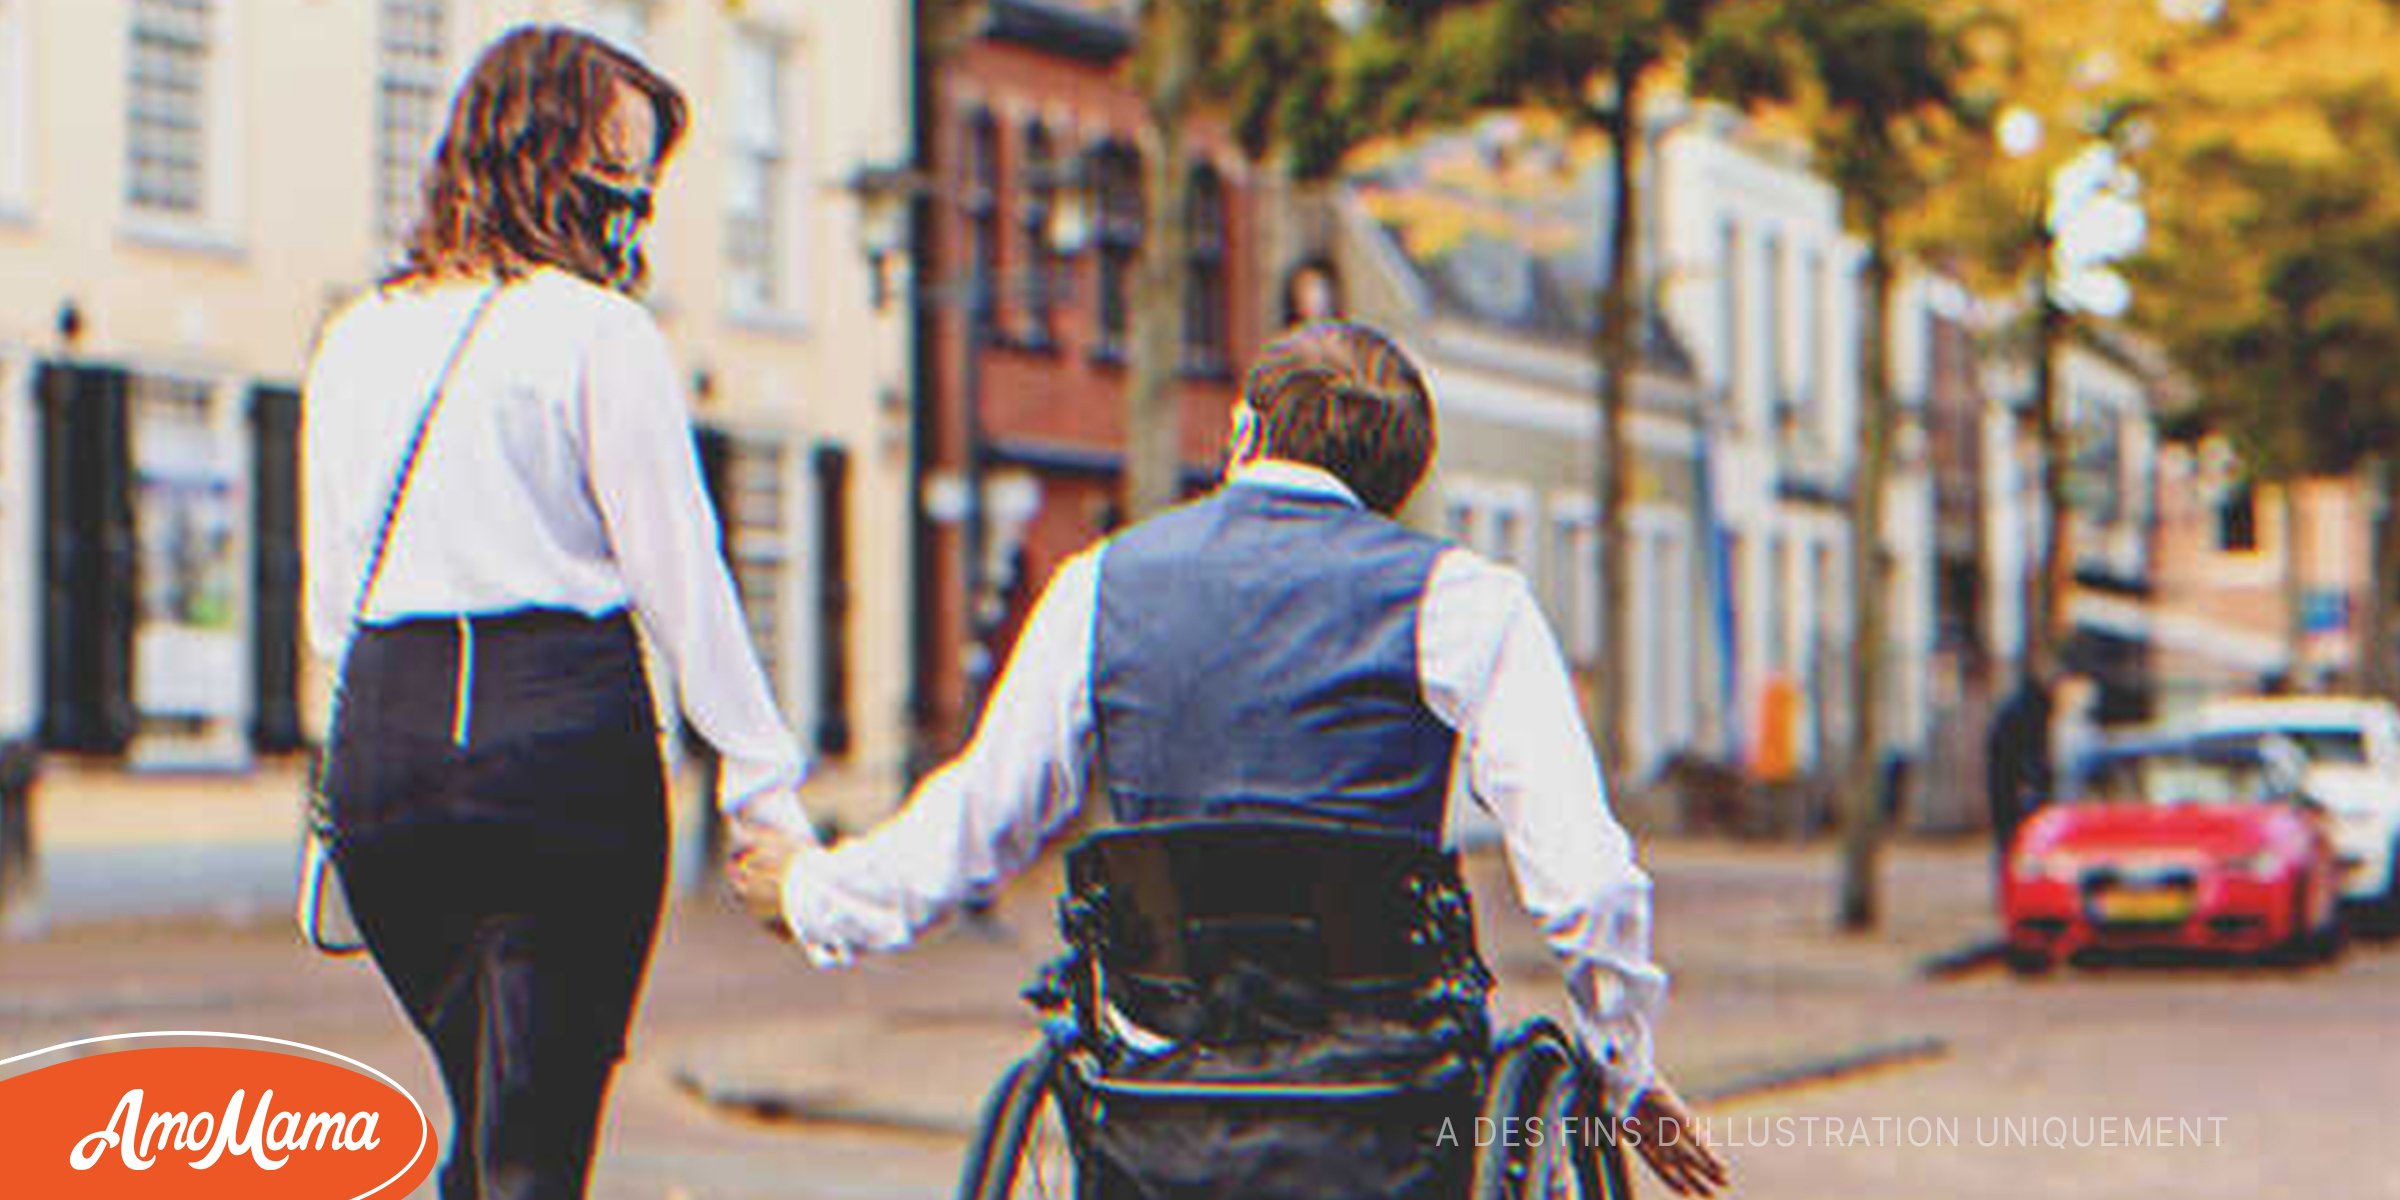 Une jeune fille épouse un pauvre homme en fauteuil roulant et le rend millionnaire en trois ans – Histoire du jour